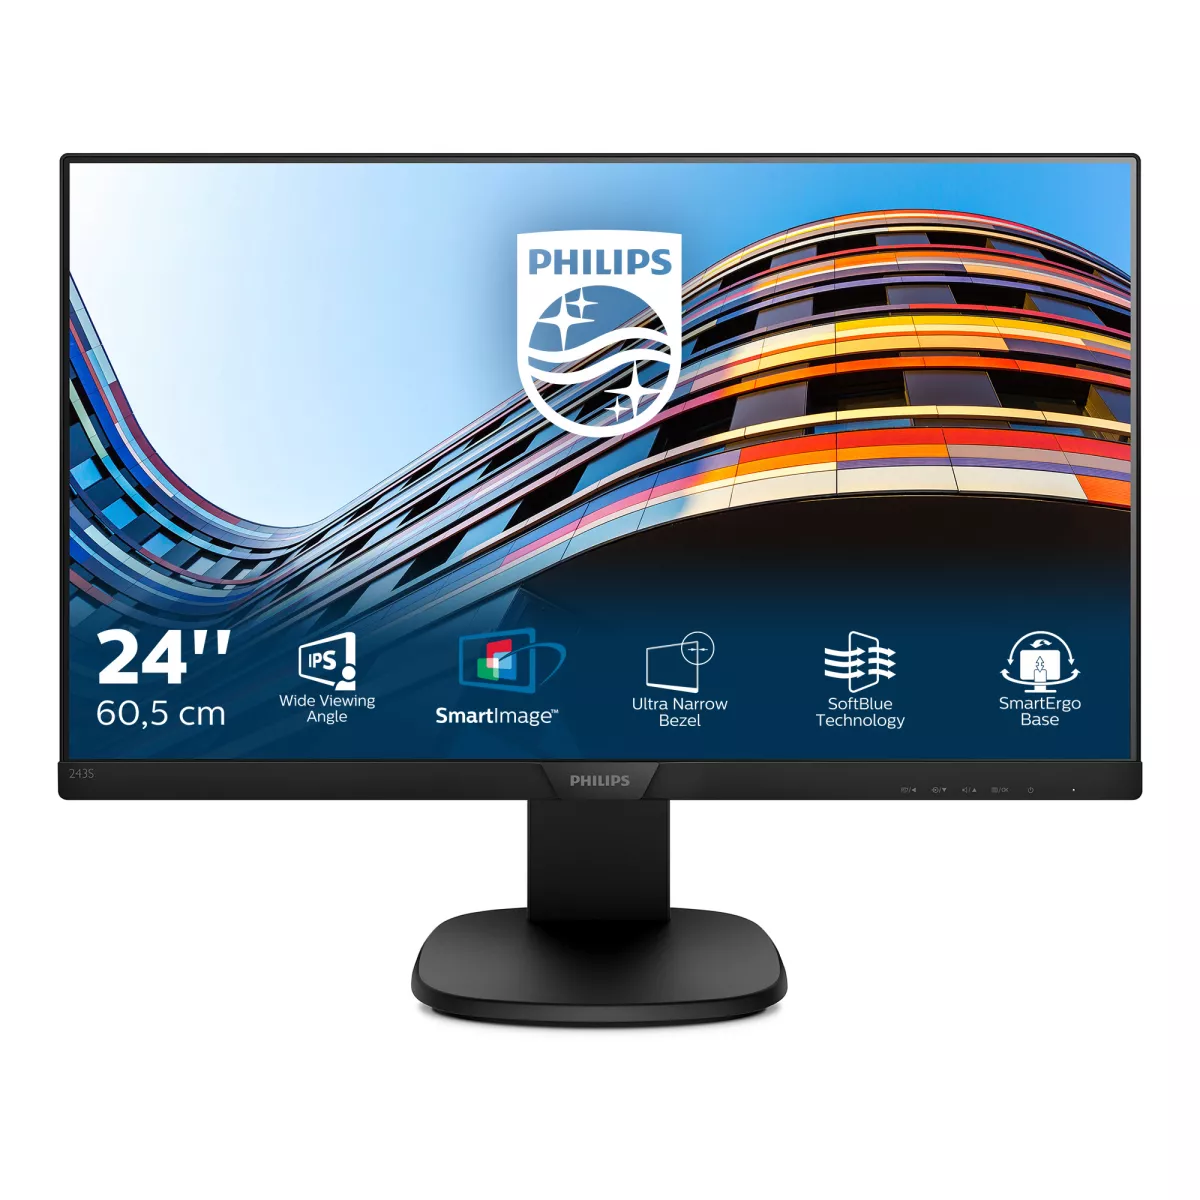 Achat Philips S Line Moniteur LCD avec technologie SoftBlue au meilleur prix